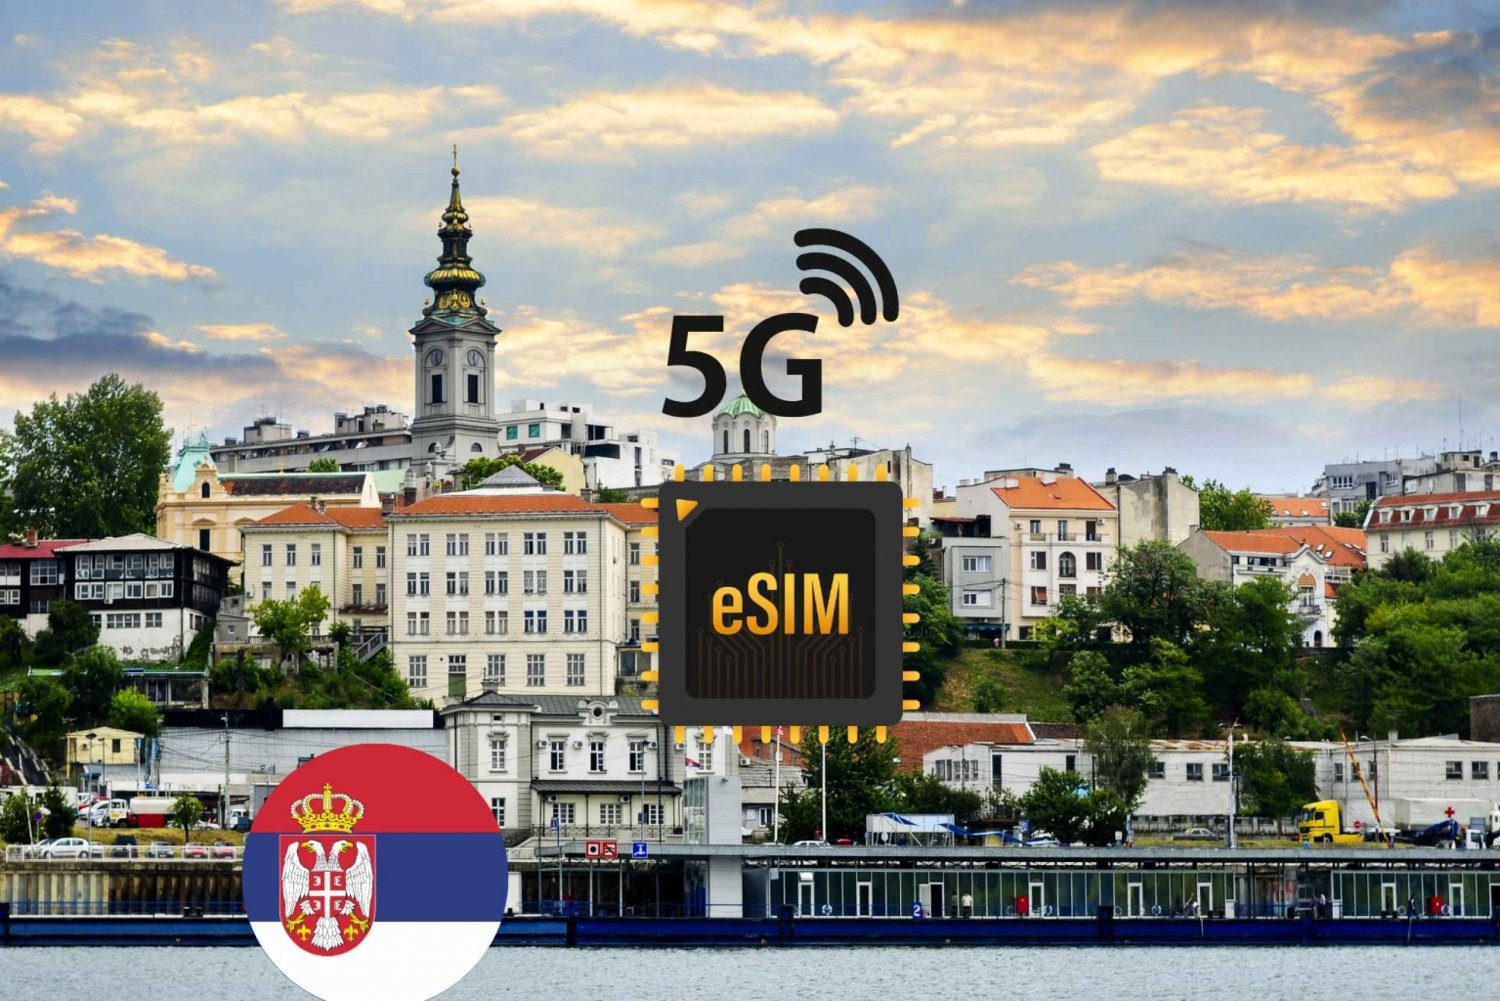 Belgrad: Plan taryfowy eSIM dla szybkiego Internetu 5G w Serbii